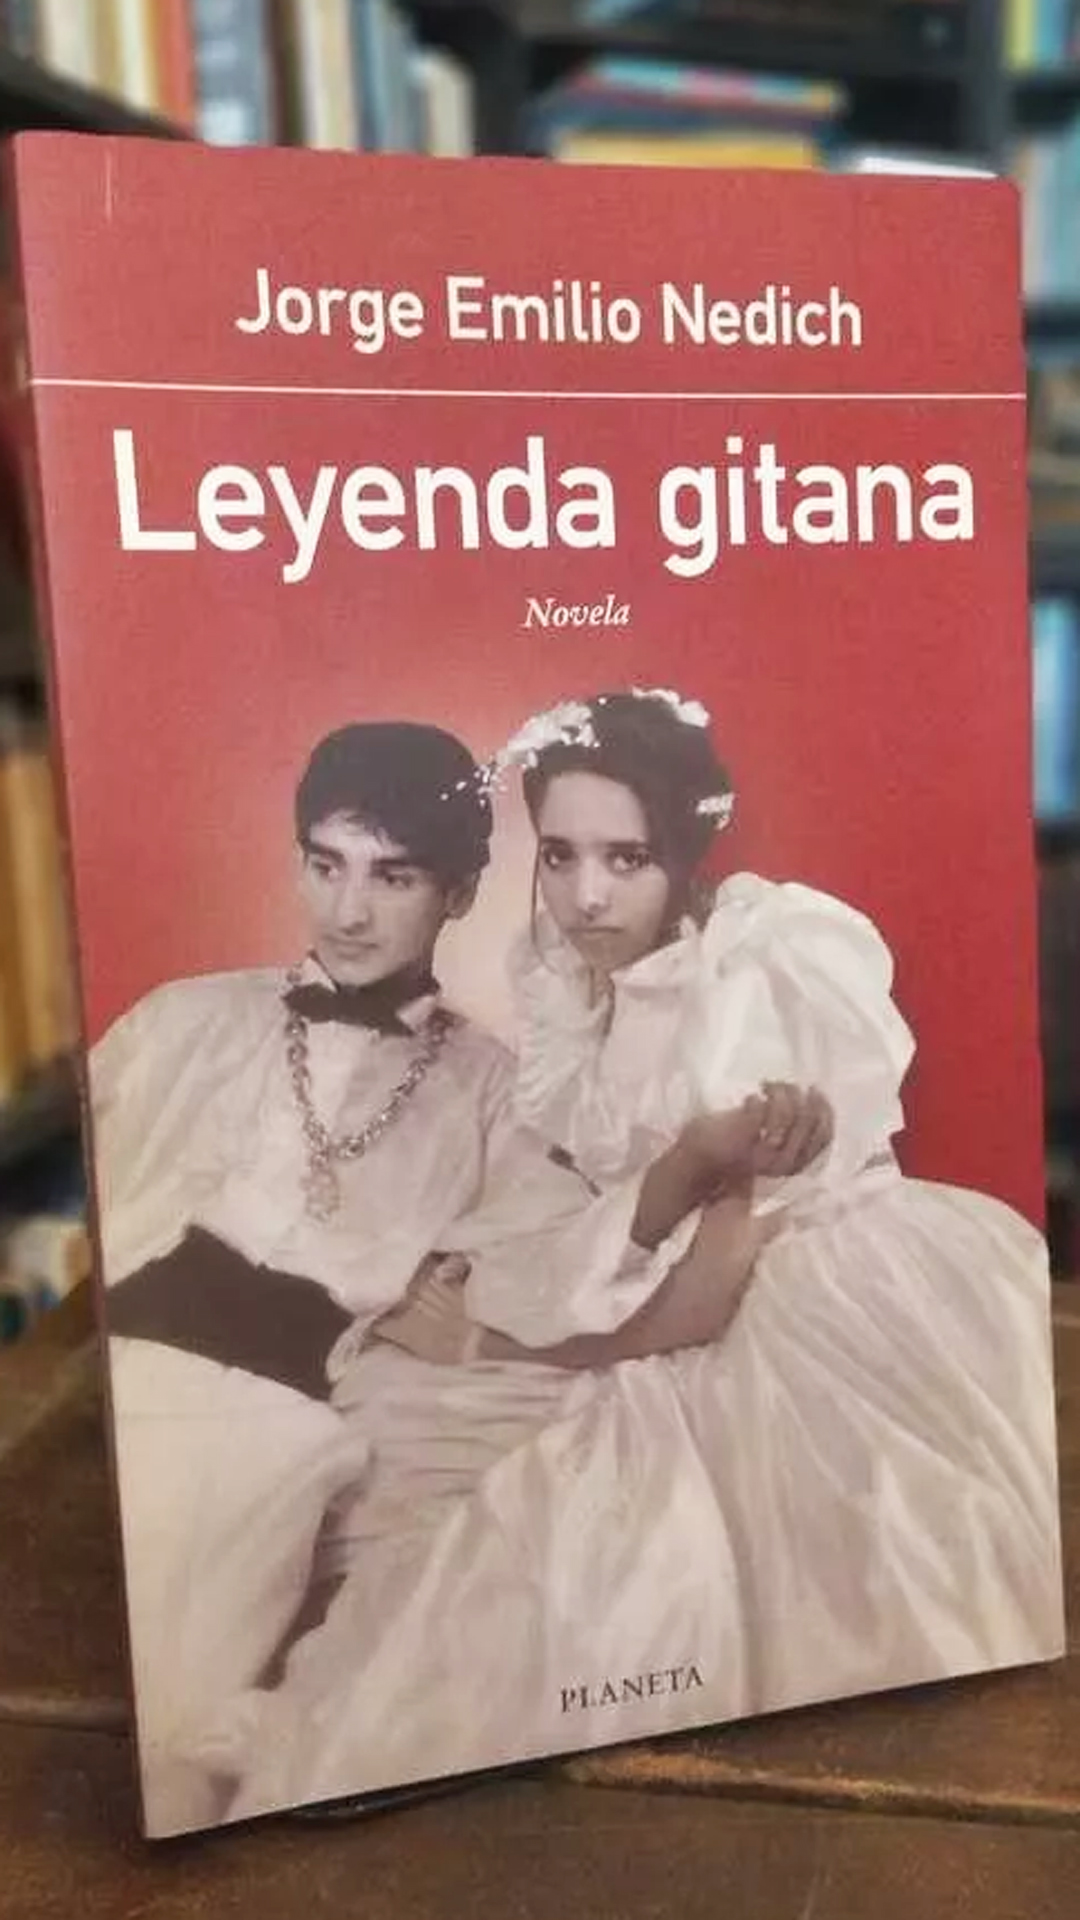 La portada de su libro "Leyenda gitana", donde aborda varios de los estigmas y la discriminación que ha padecido la comunidad